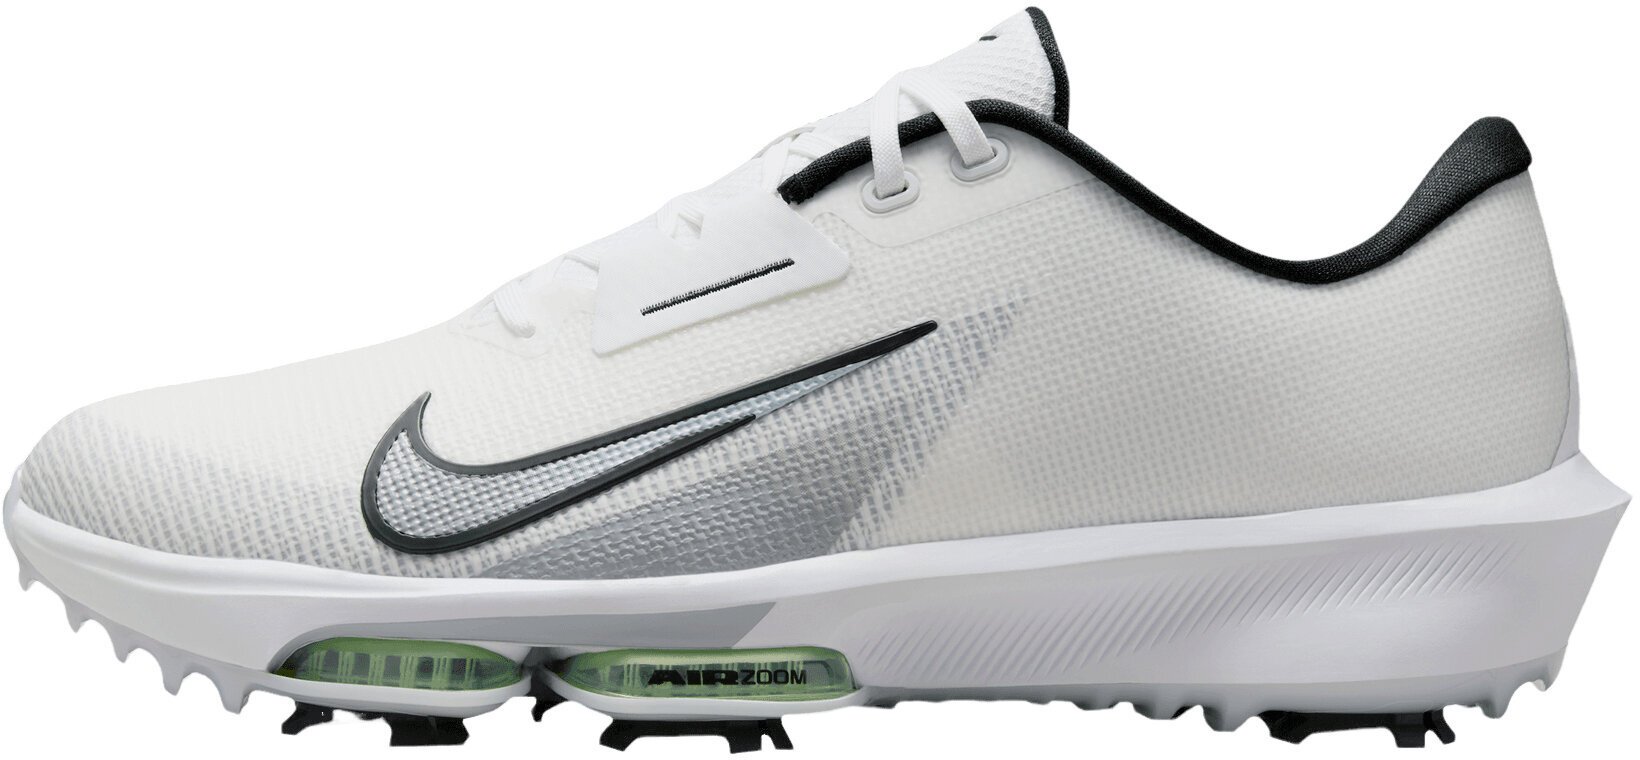 Calzado de golf para hombres Nike Air Zoom Infinity Tour Next 2 Unisex Golf Shoes White/Black/Vapor Green/Pure Platinum 44,5 Calzado de golf para hombres